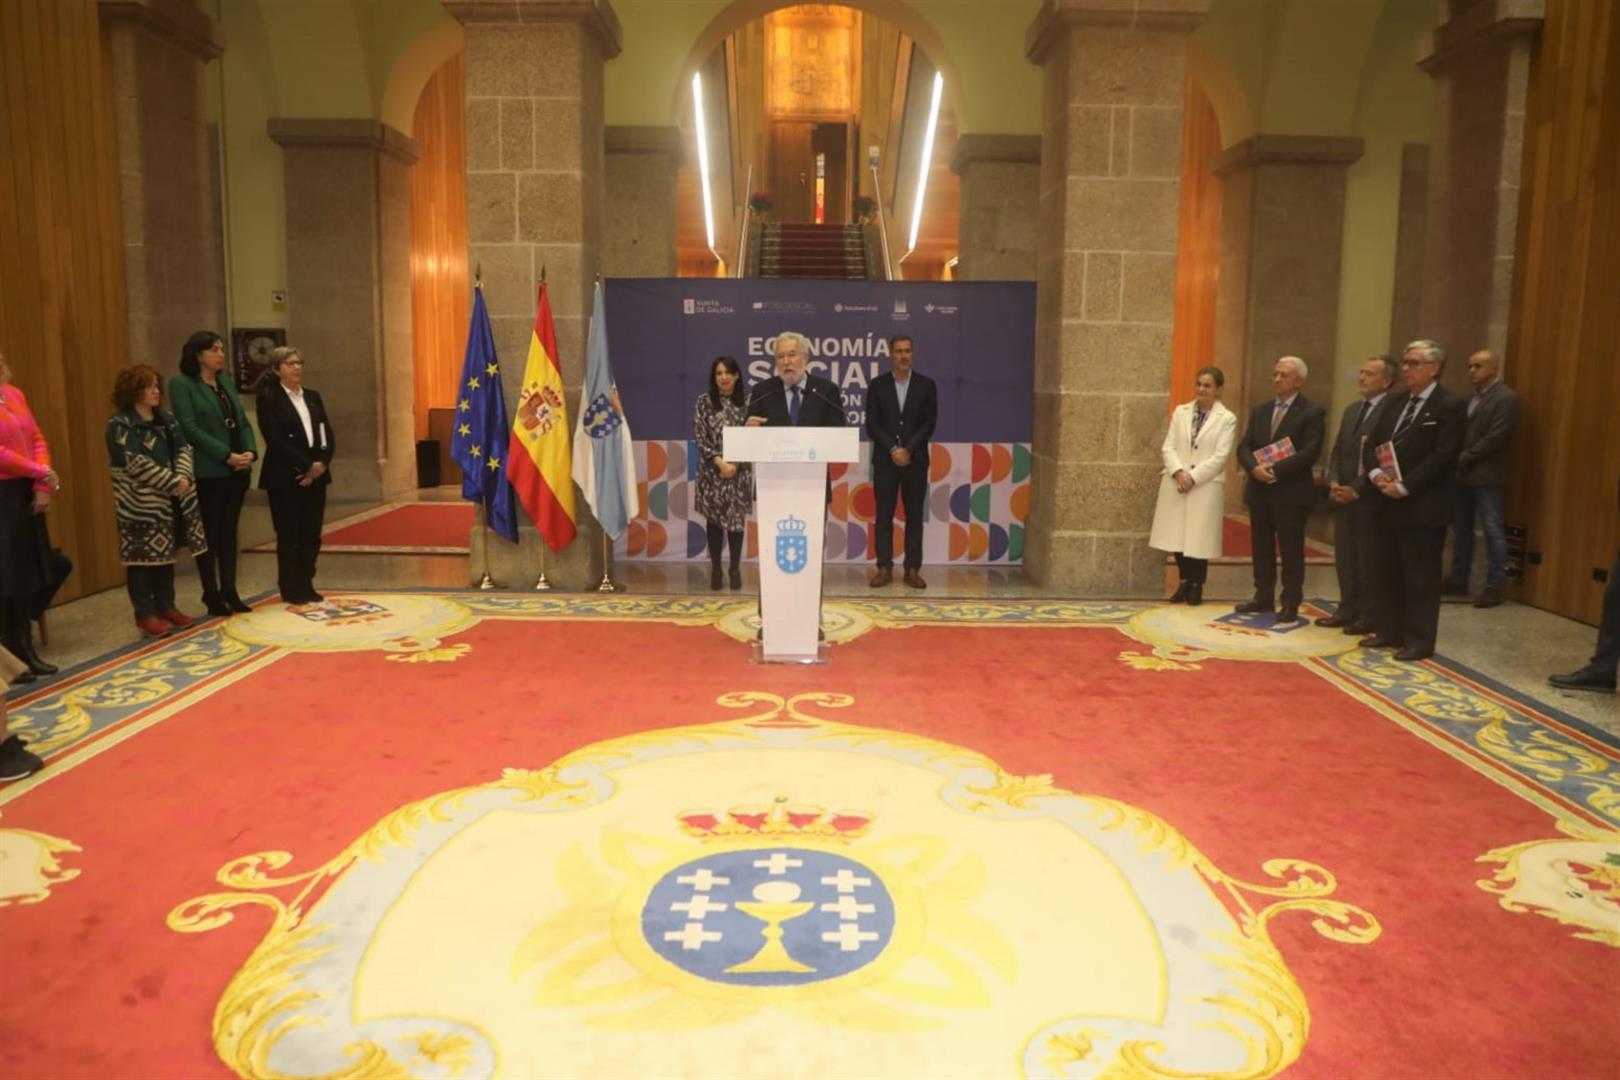 Foto da noticia: O Parlamento de Galicia acolle a exposición "Economía social no corazón da nosa historia" 